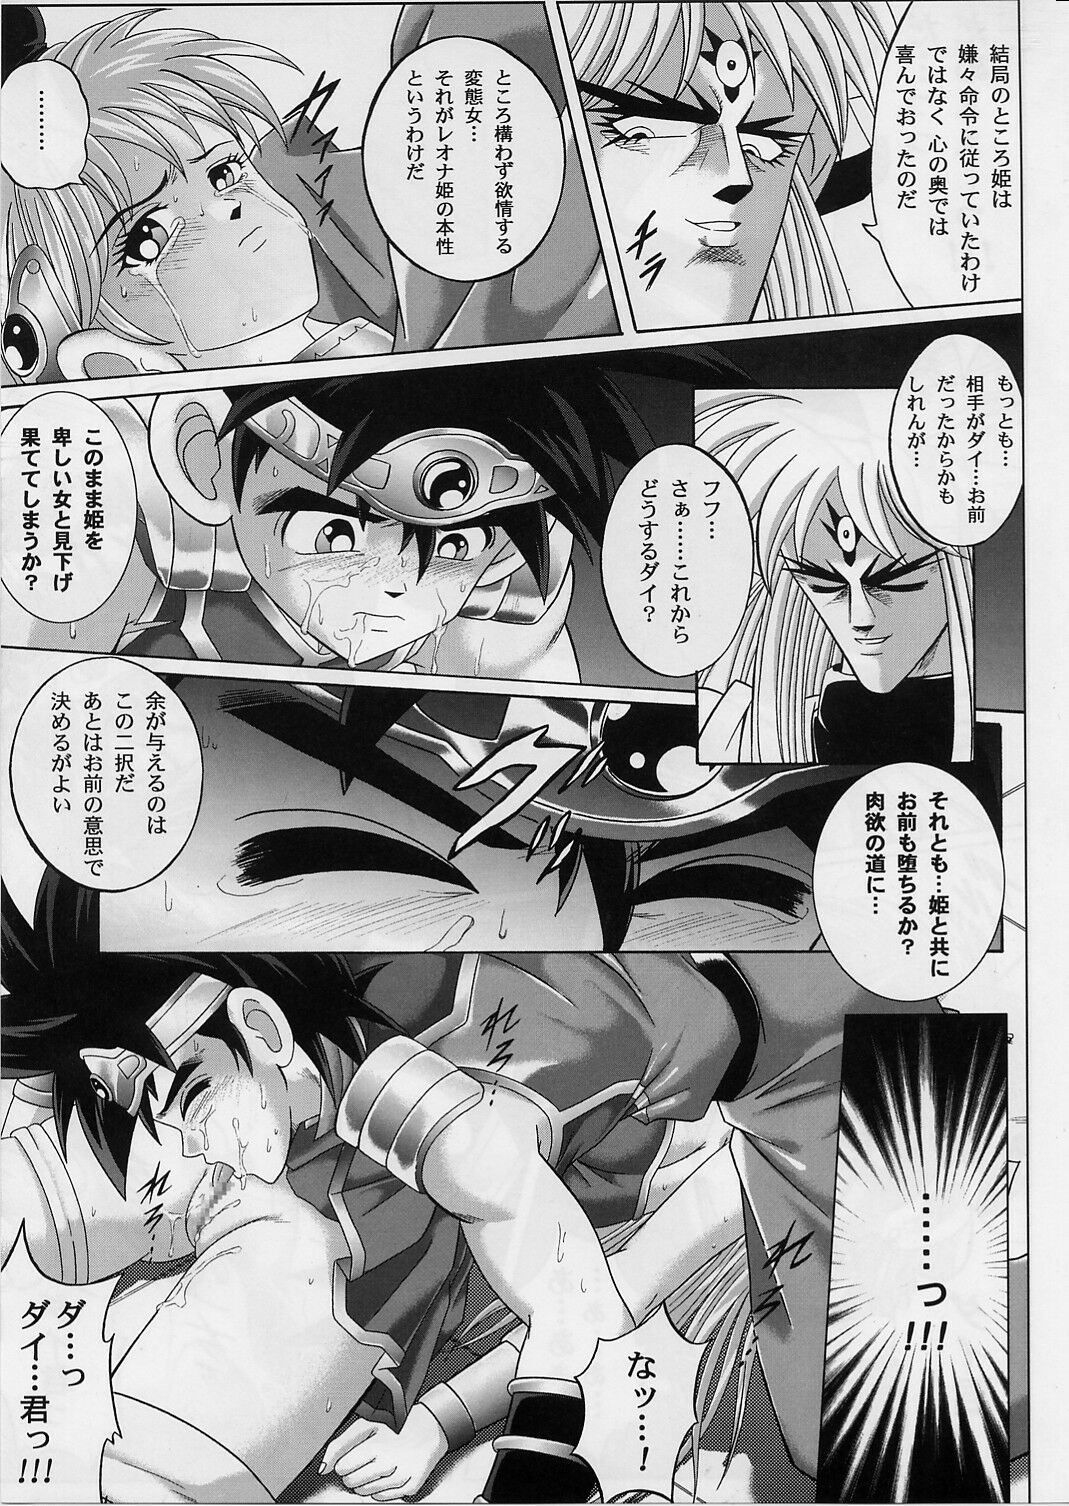 [Cyclone (Izumi, Reizei)] DIME ALLIANCE 2 (Dragon Quest Dai no Daibouken) page 22 full